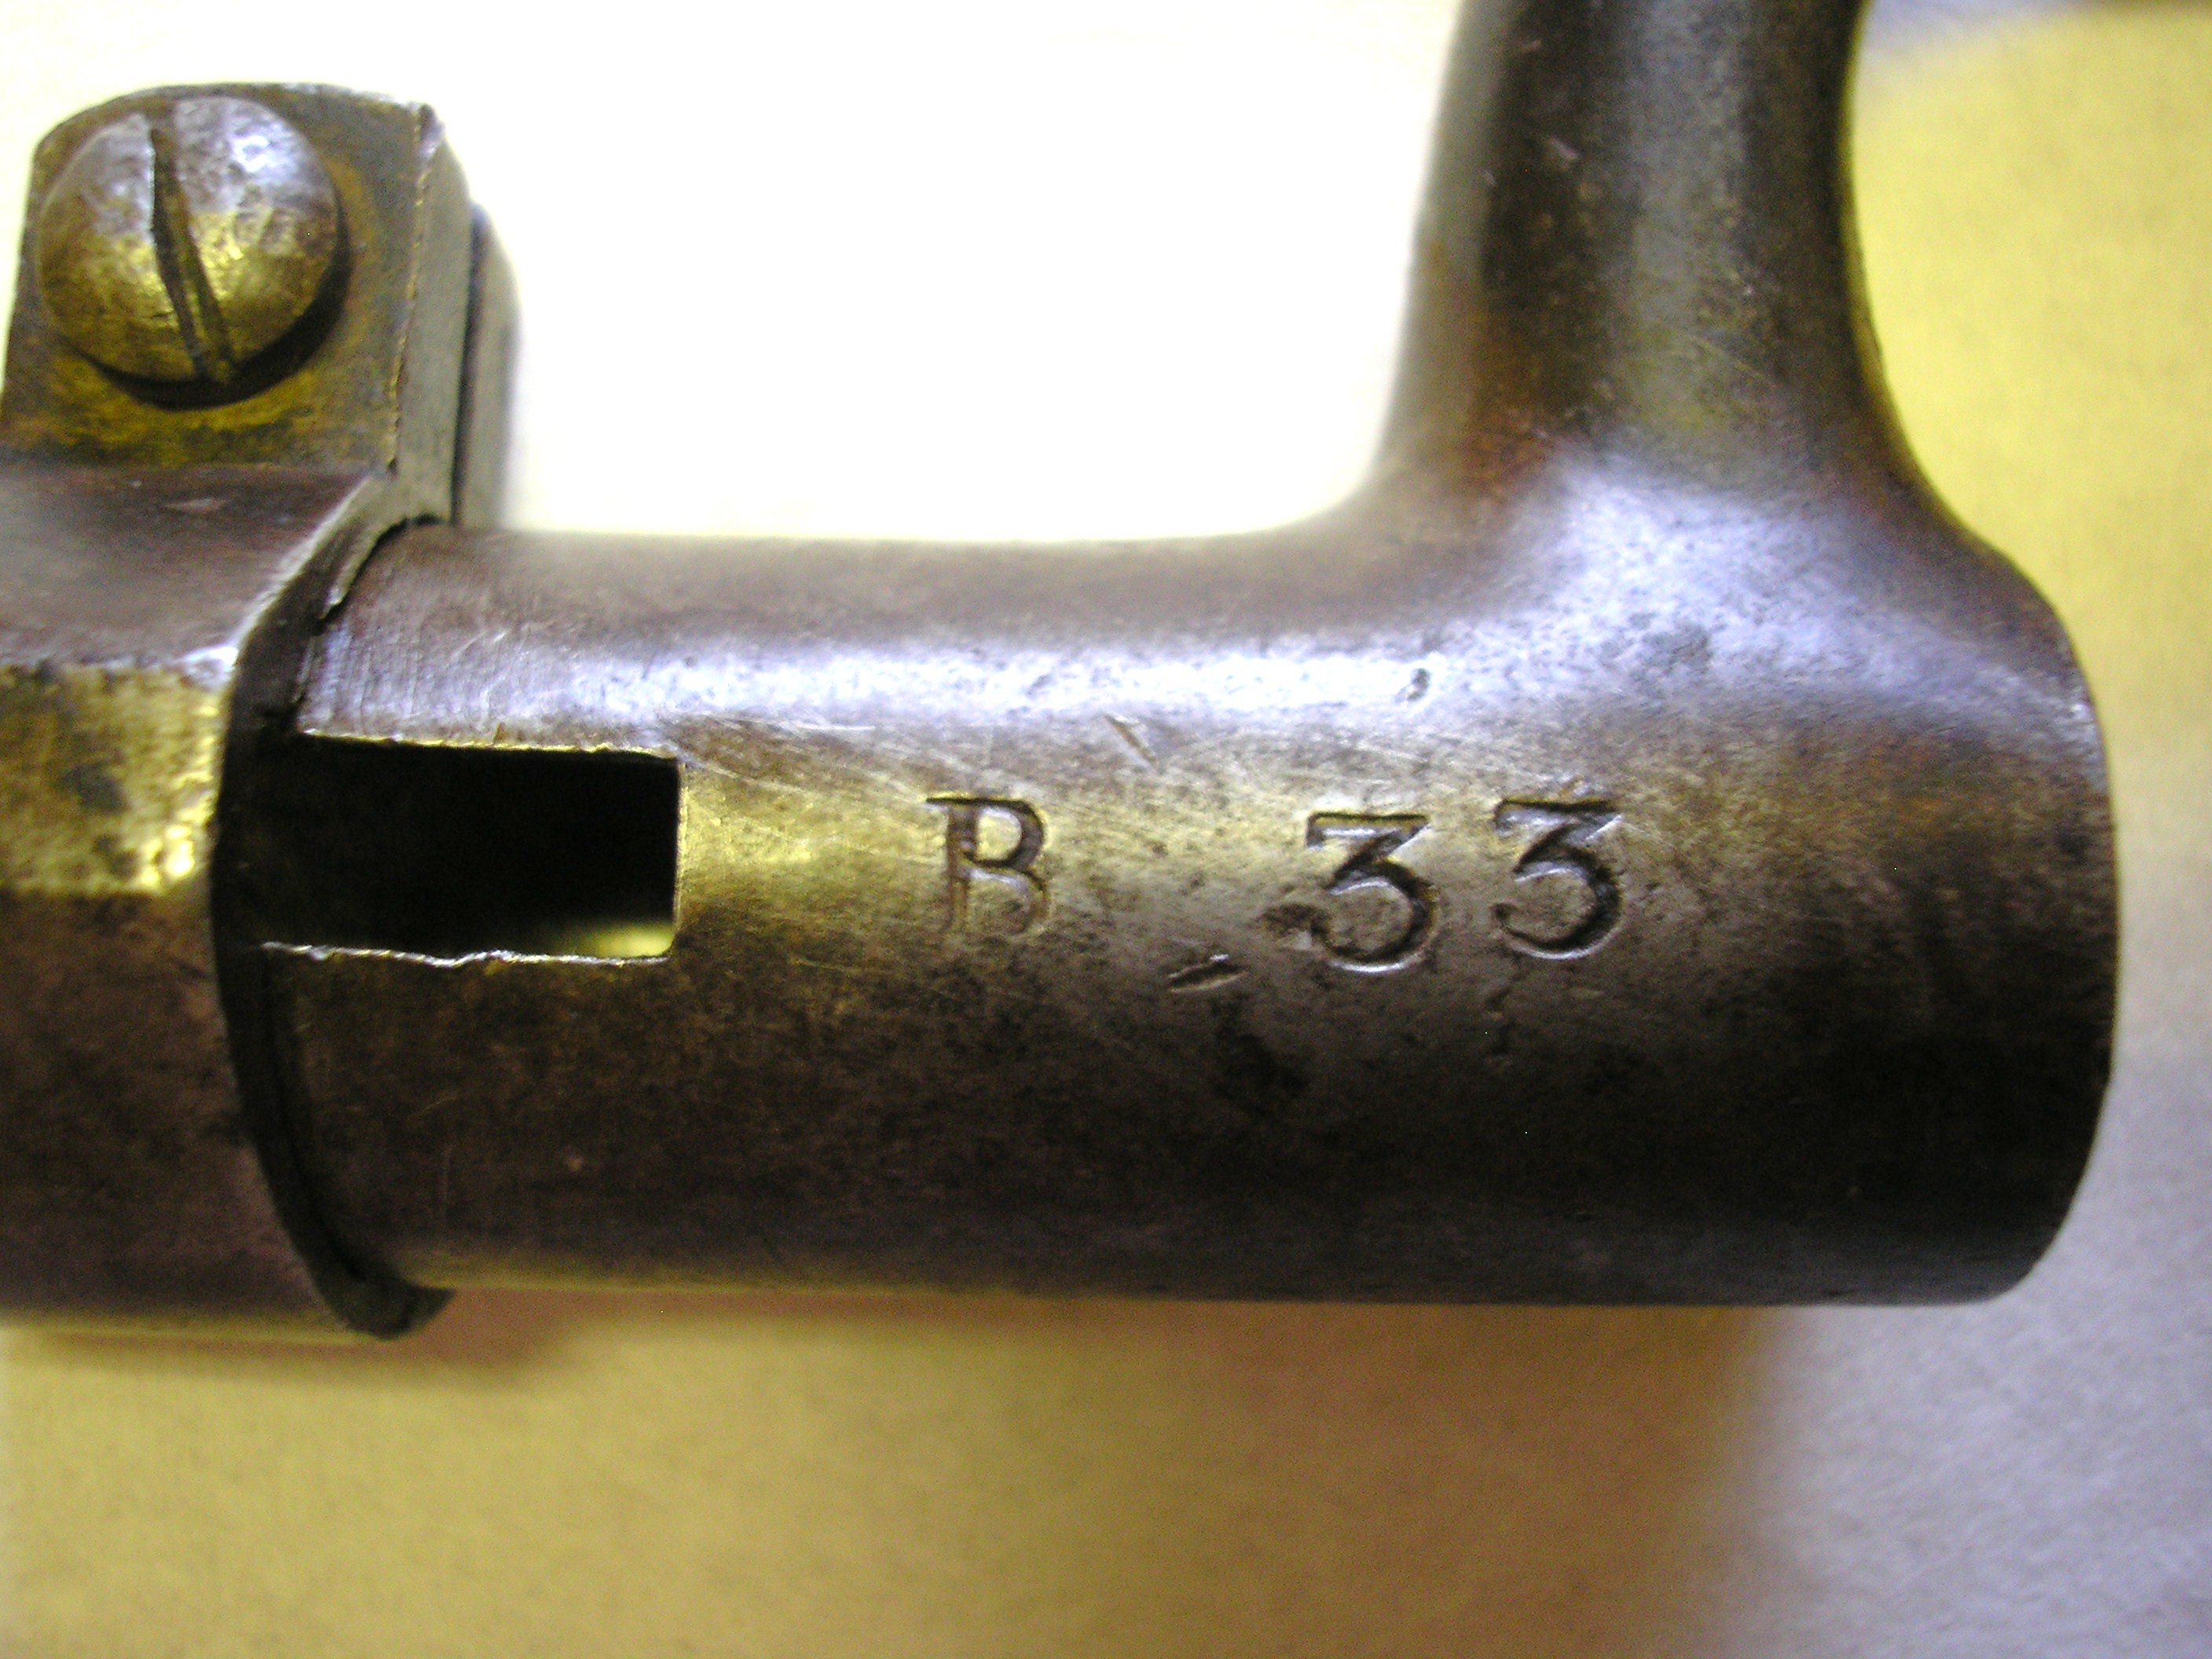 ./guns/blankvaapen/bilder/Blank-Kongsberg-Dolle-M1846-134-4.JPG